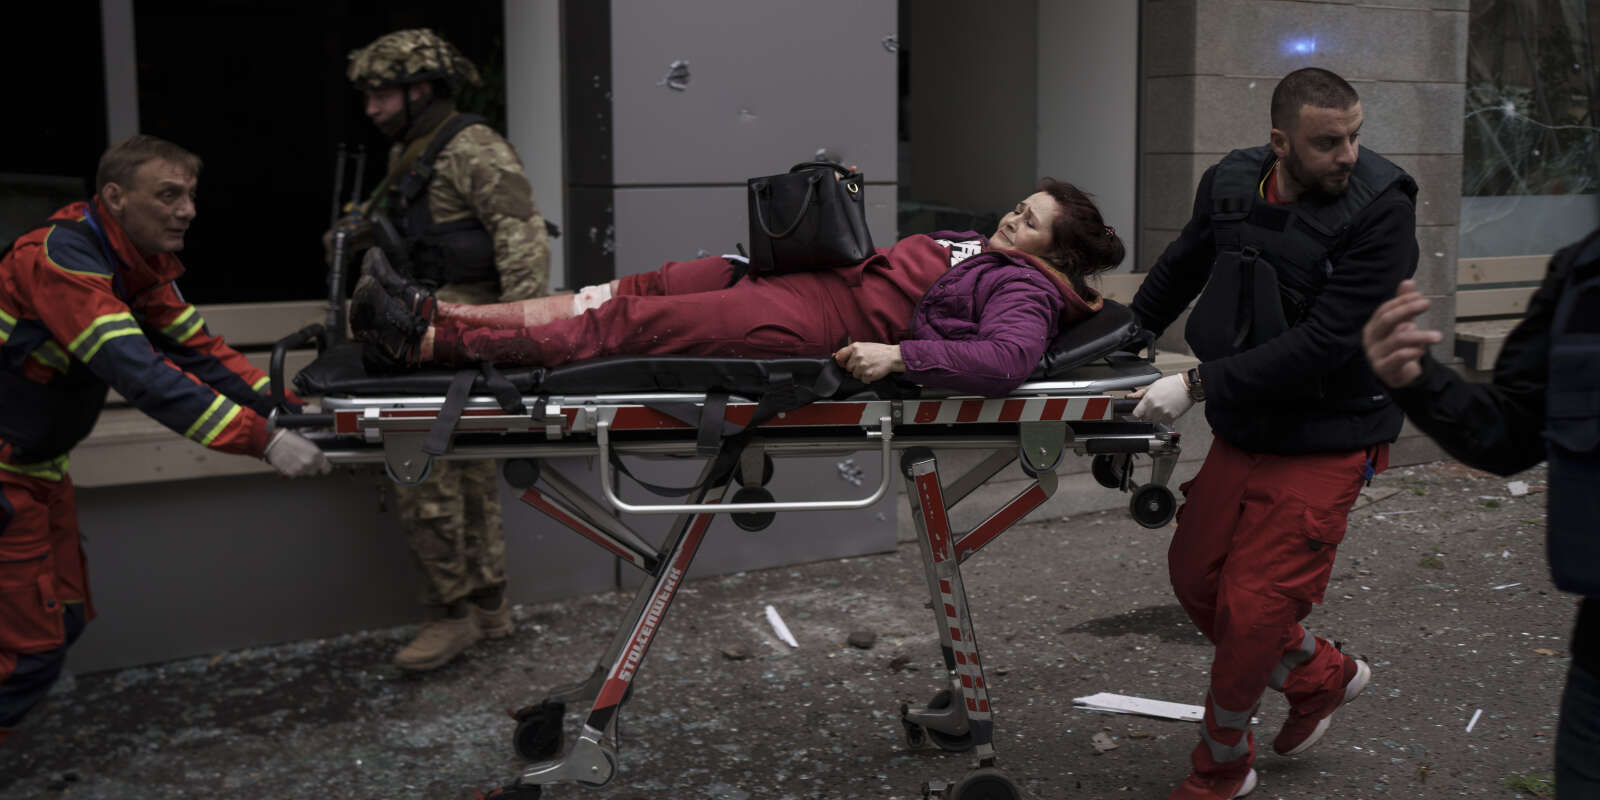  Une femme est emmenée dans une ambulance après avoir été blessée lors d’un bombardement russe à Kharkiv, en Ukraine, dimanche 17 avril 2022.